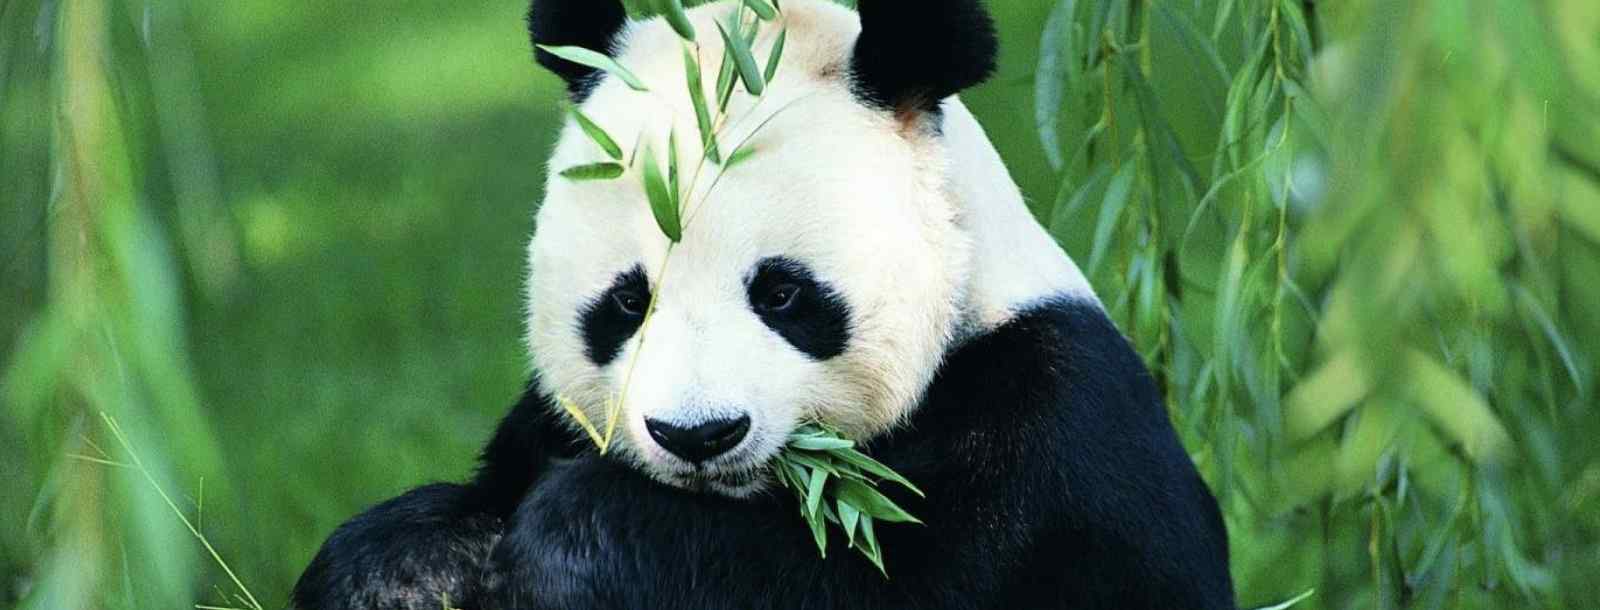 大熊猫的生活环境和方式特征